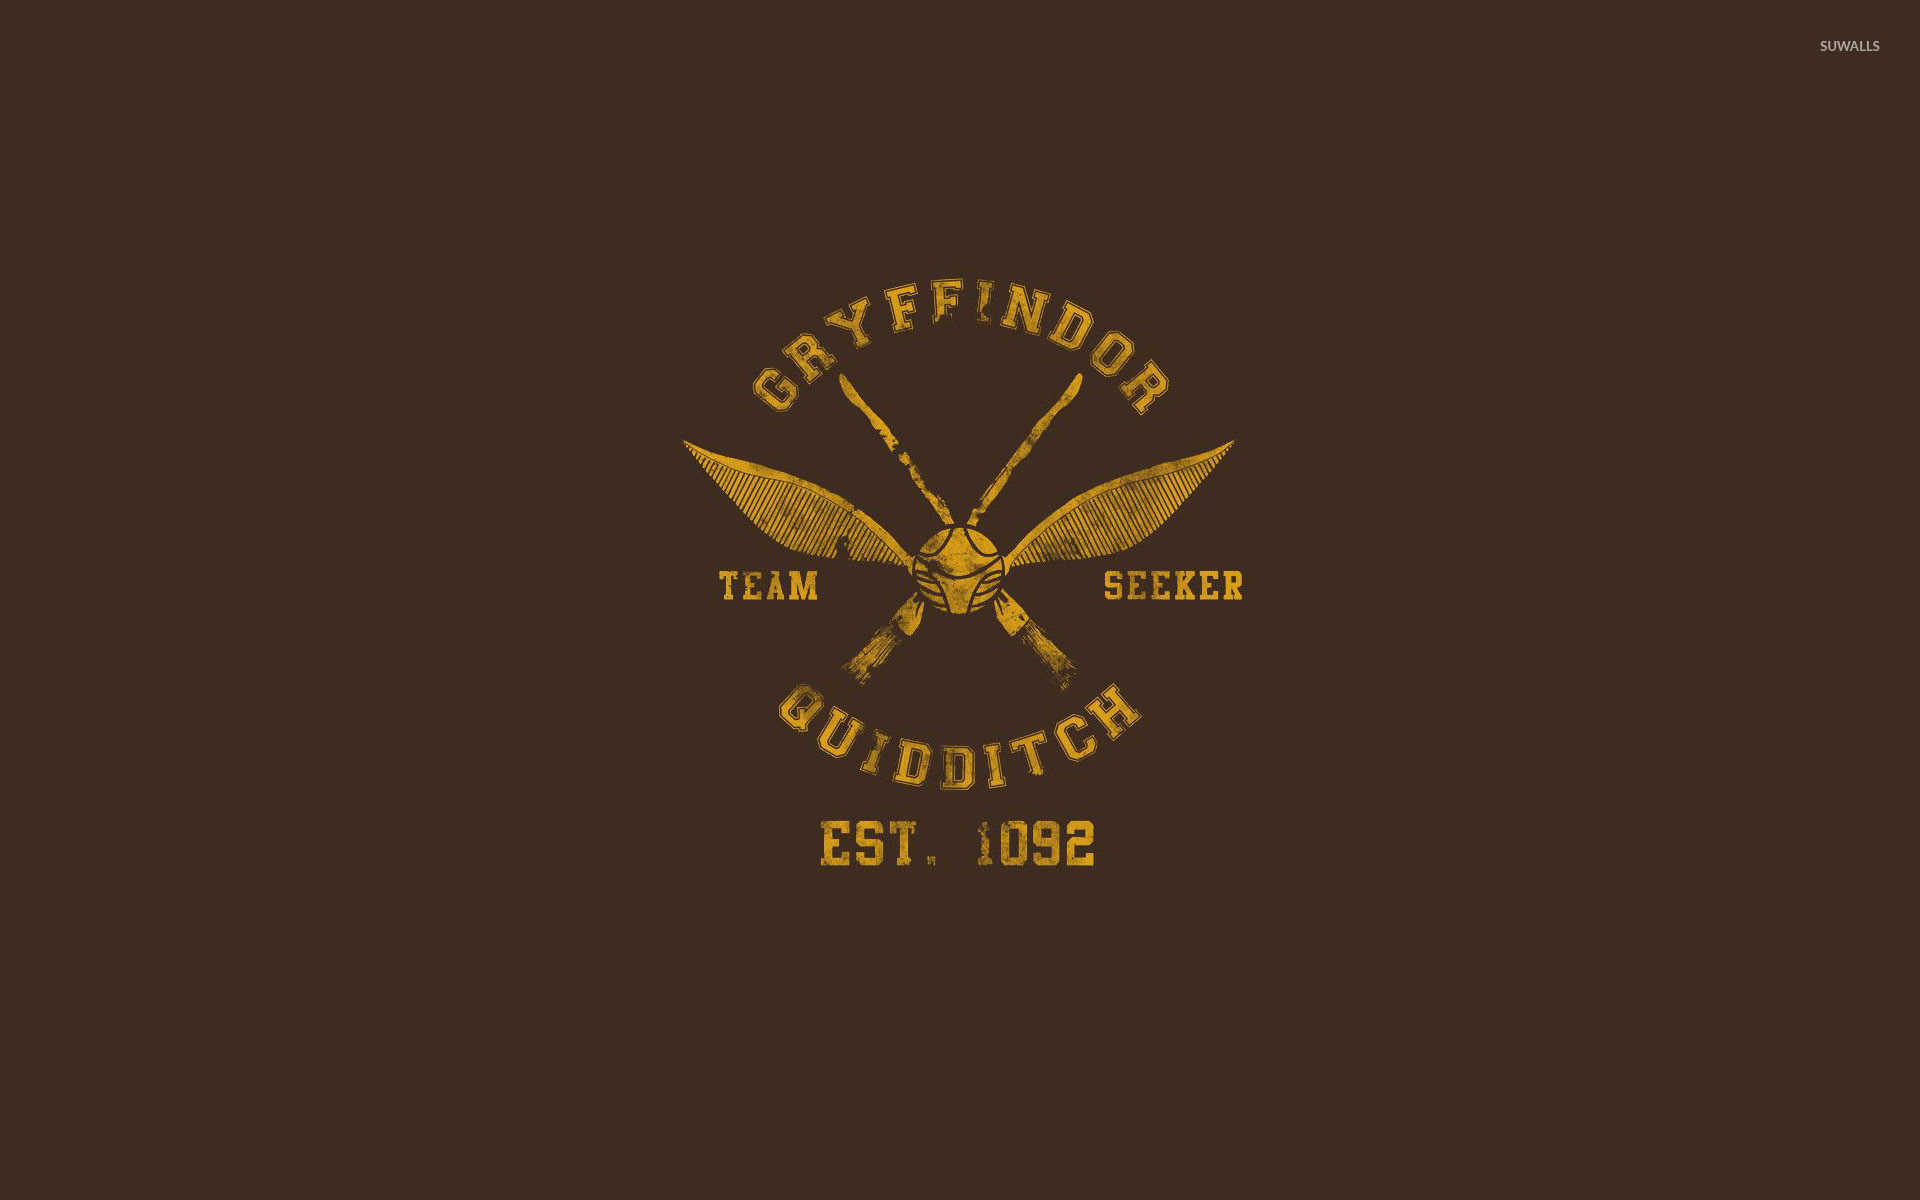 1920x1200 Gryffindor Quidditch team wallpaper Â· Vector Â· Harry Potter Â· Gryffindor ...